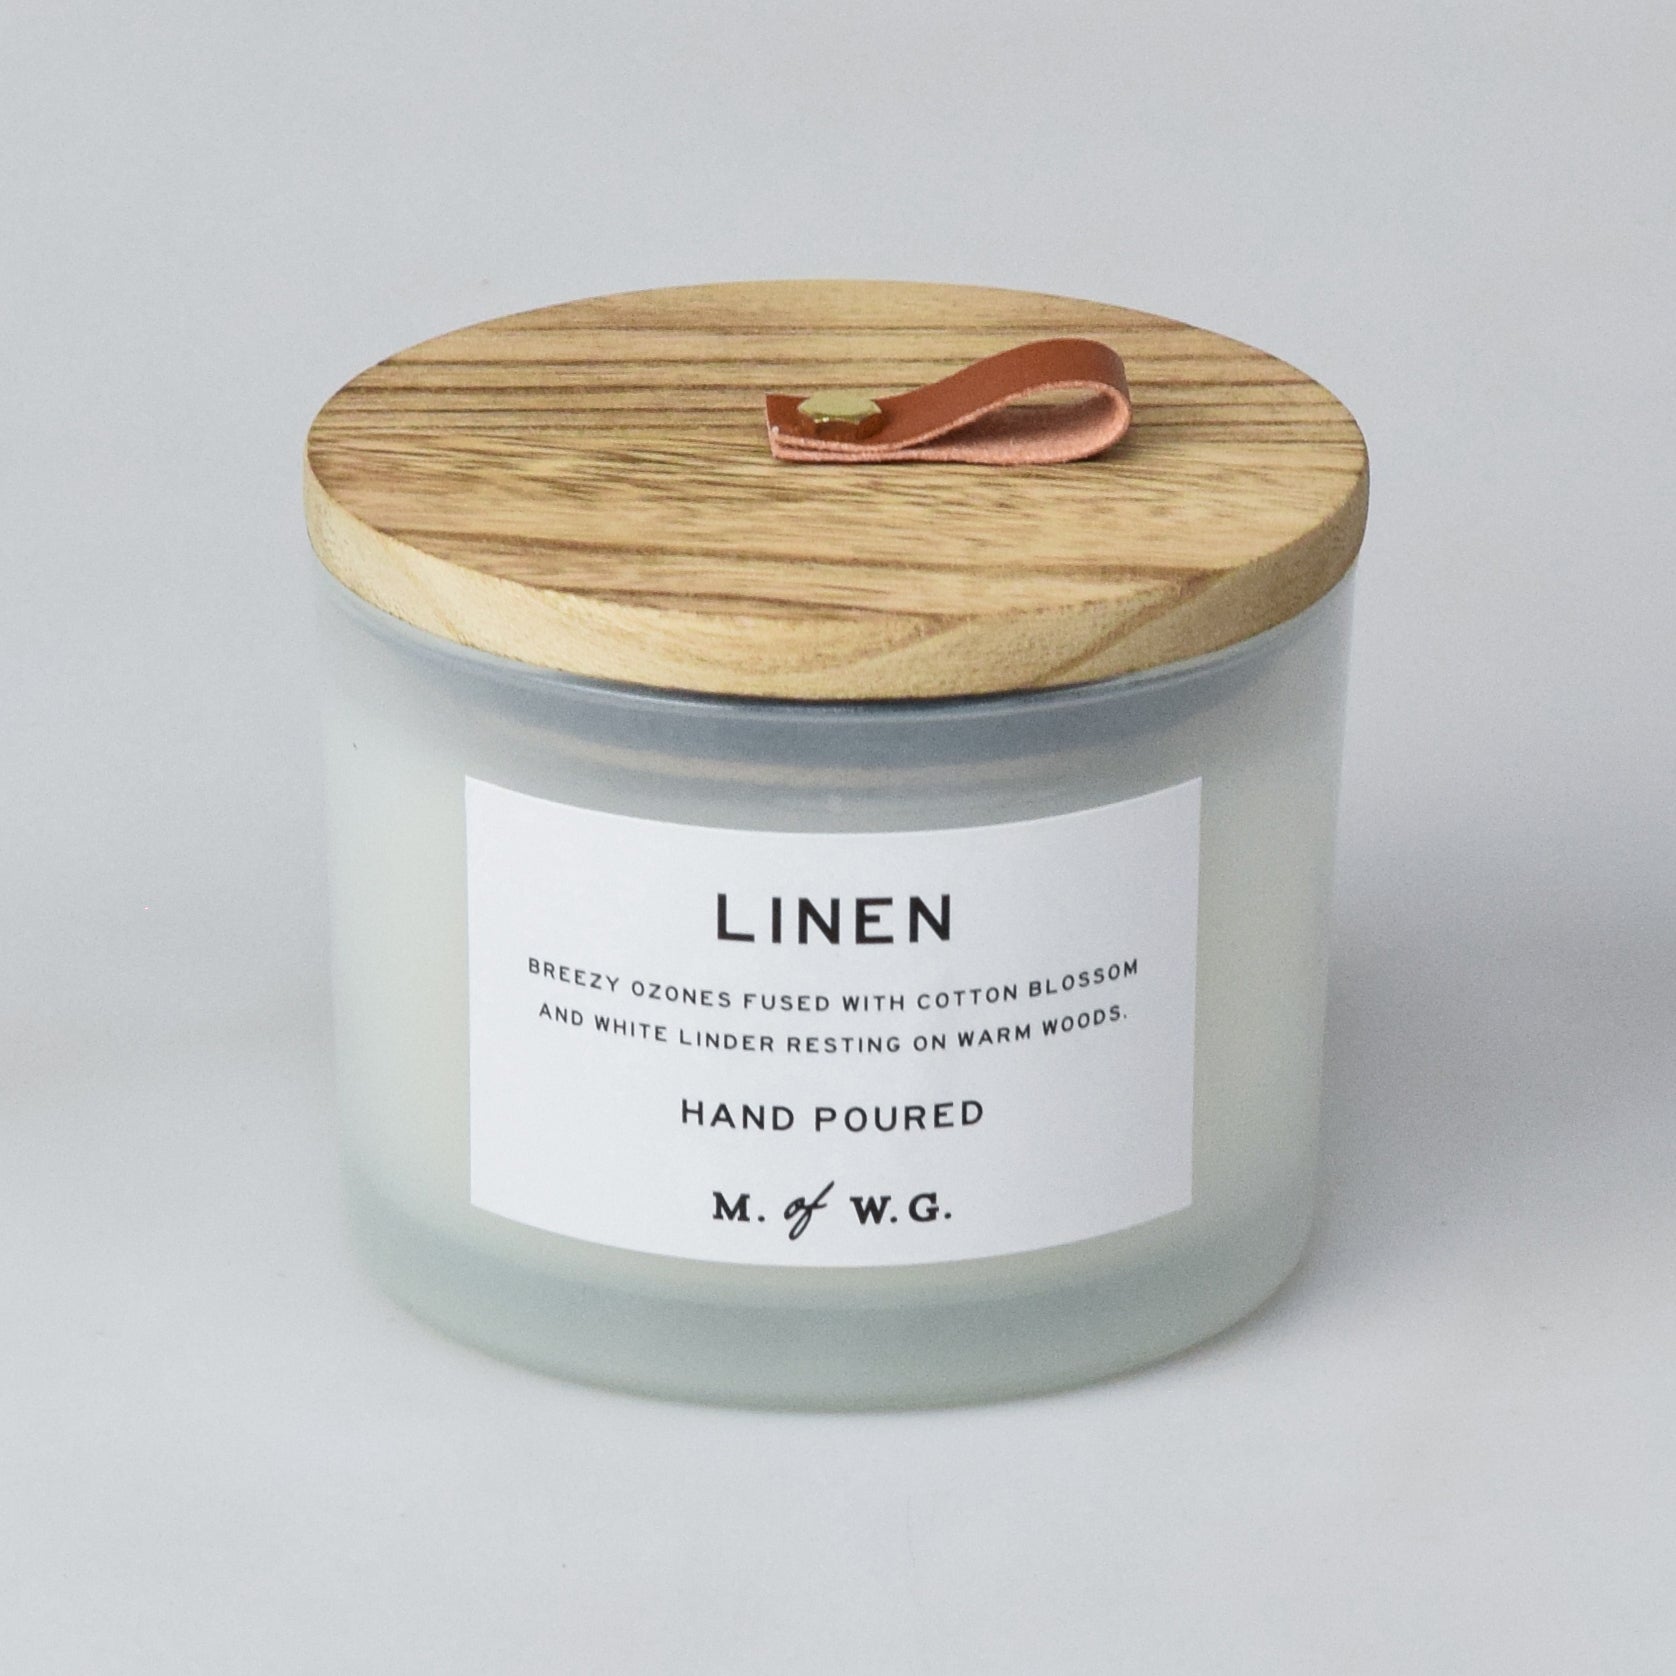 Linen – Makers of Wax Goods